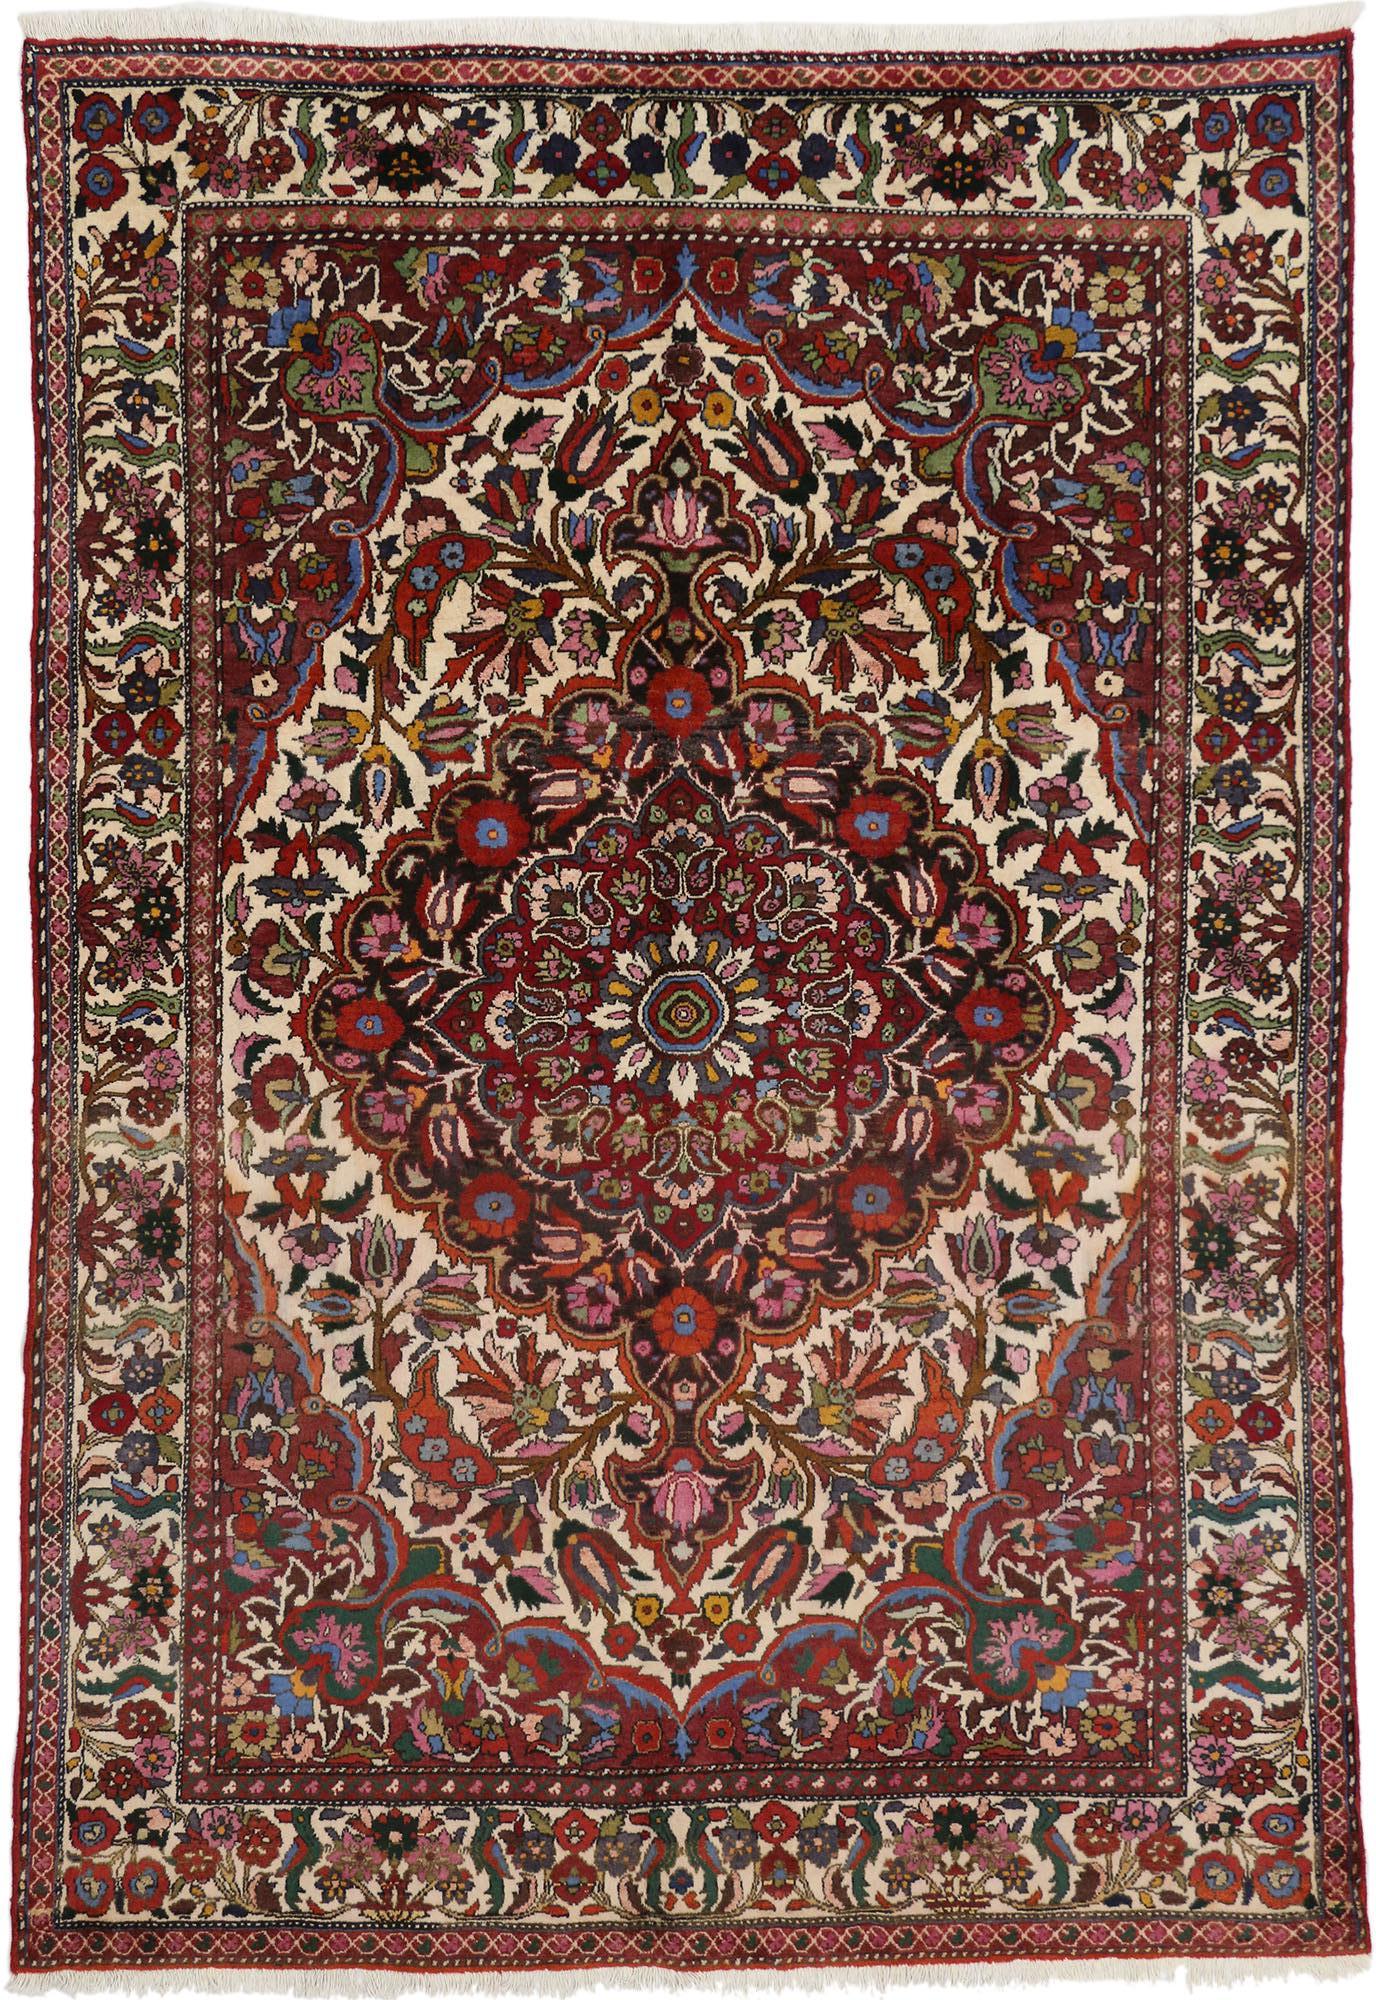 71962 Tapis Vintage Persan Bakhtiari, 07'03 x 10'04. Les tapis persans Bakhtiari, originaires des montagnes accidentées de Zagros en Iran, sont appréciés pour leur artisanat exquis et leur riche patrimoine culturel. Tissés à la main par des artisans